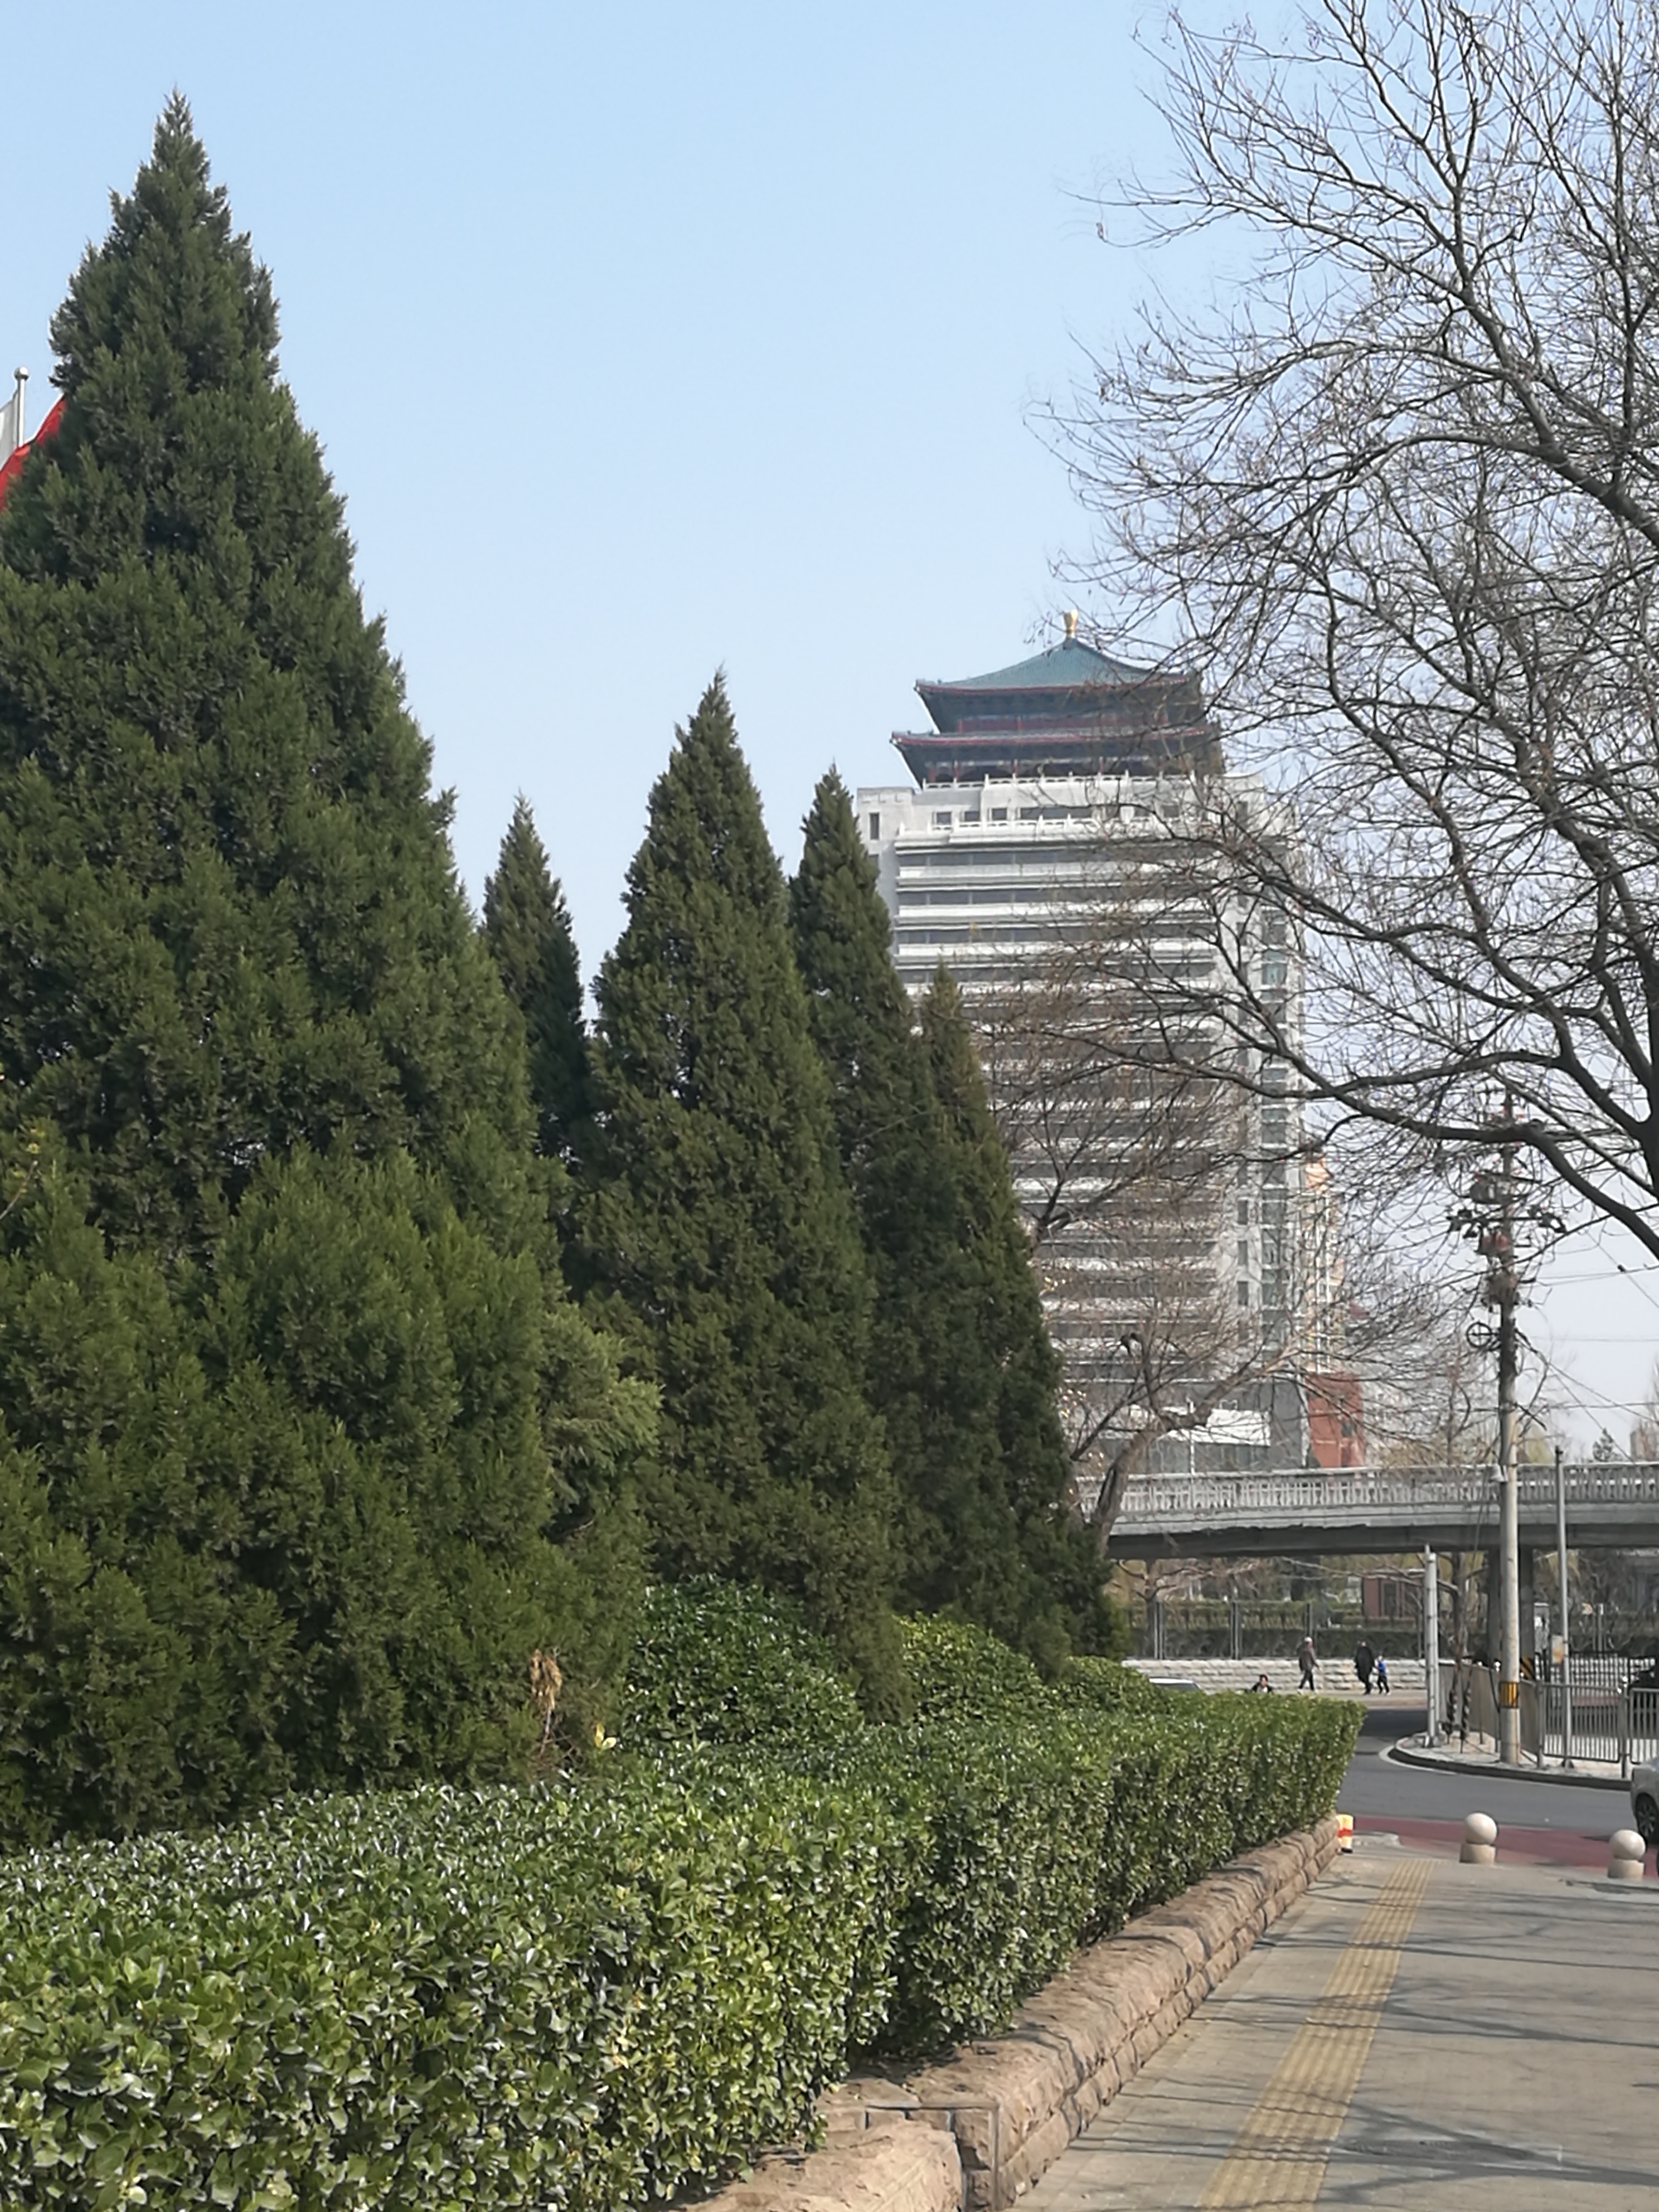 北京大屋顶建筑图片